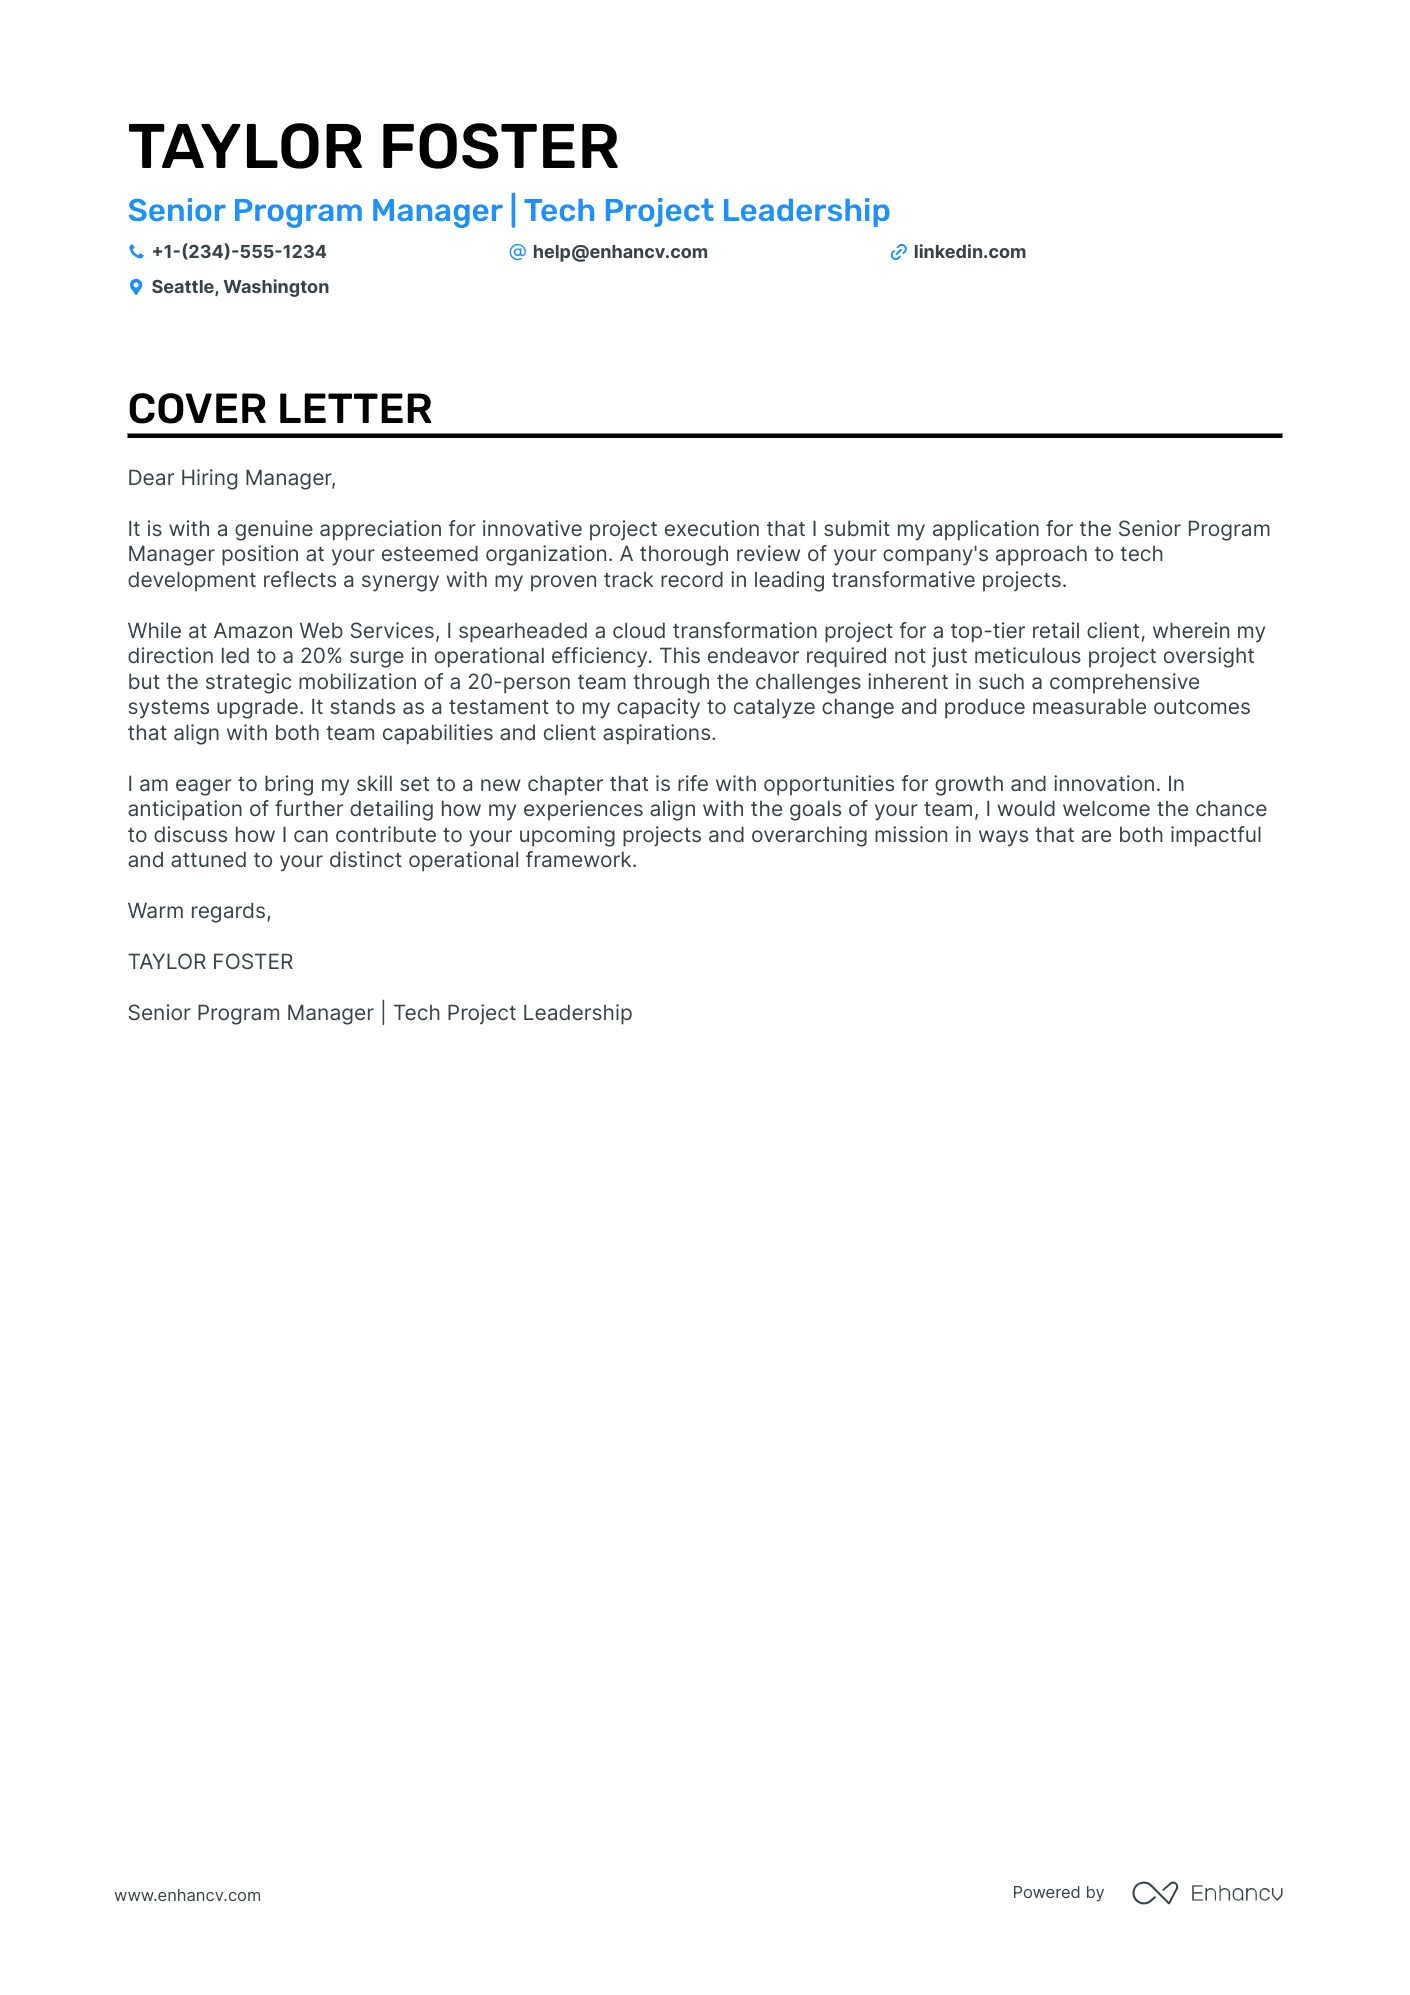 Senior Program Manager cover letter